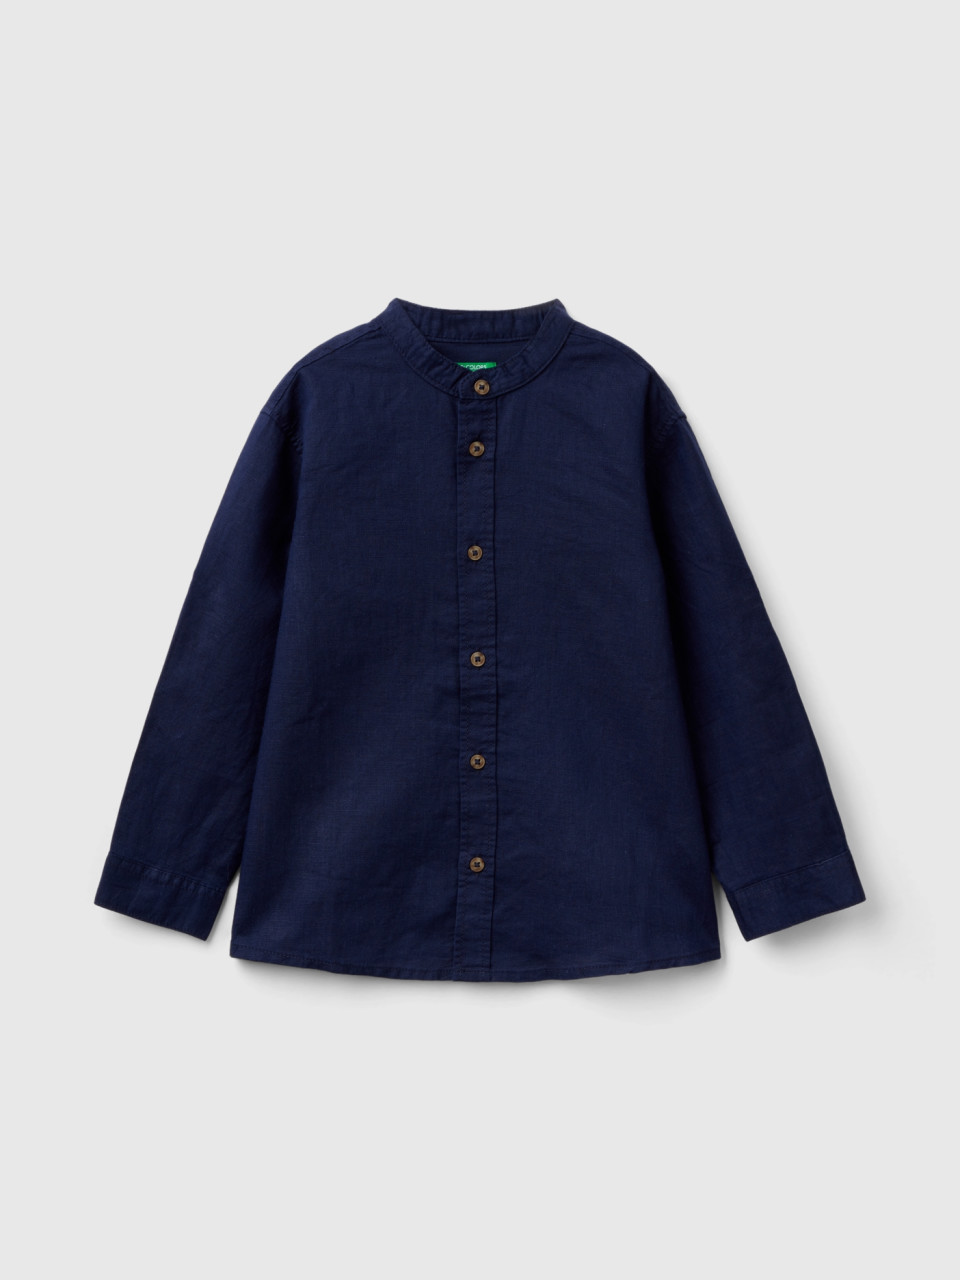 Benetton, Mandarin Collar Shirt In Linen Blend, Dark Blue, Kids